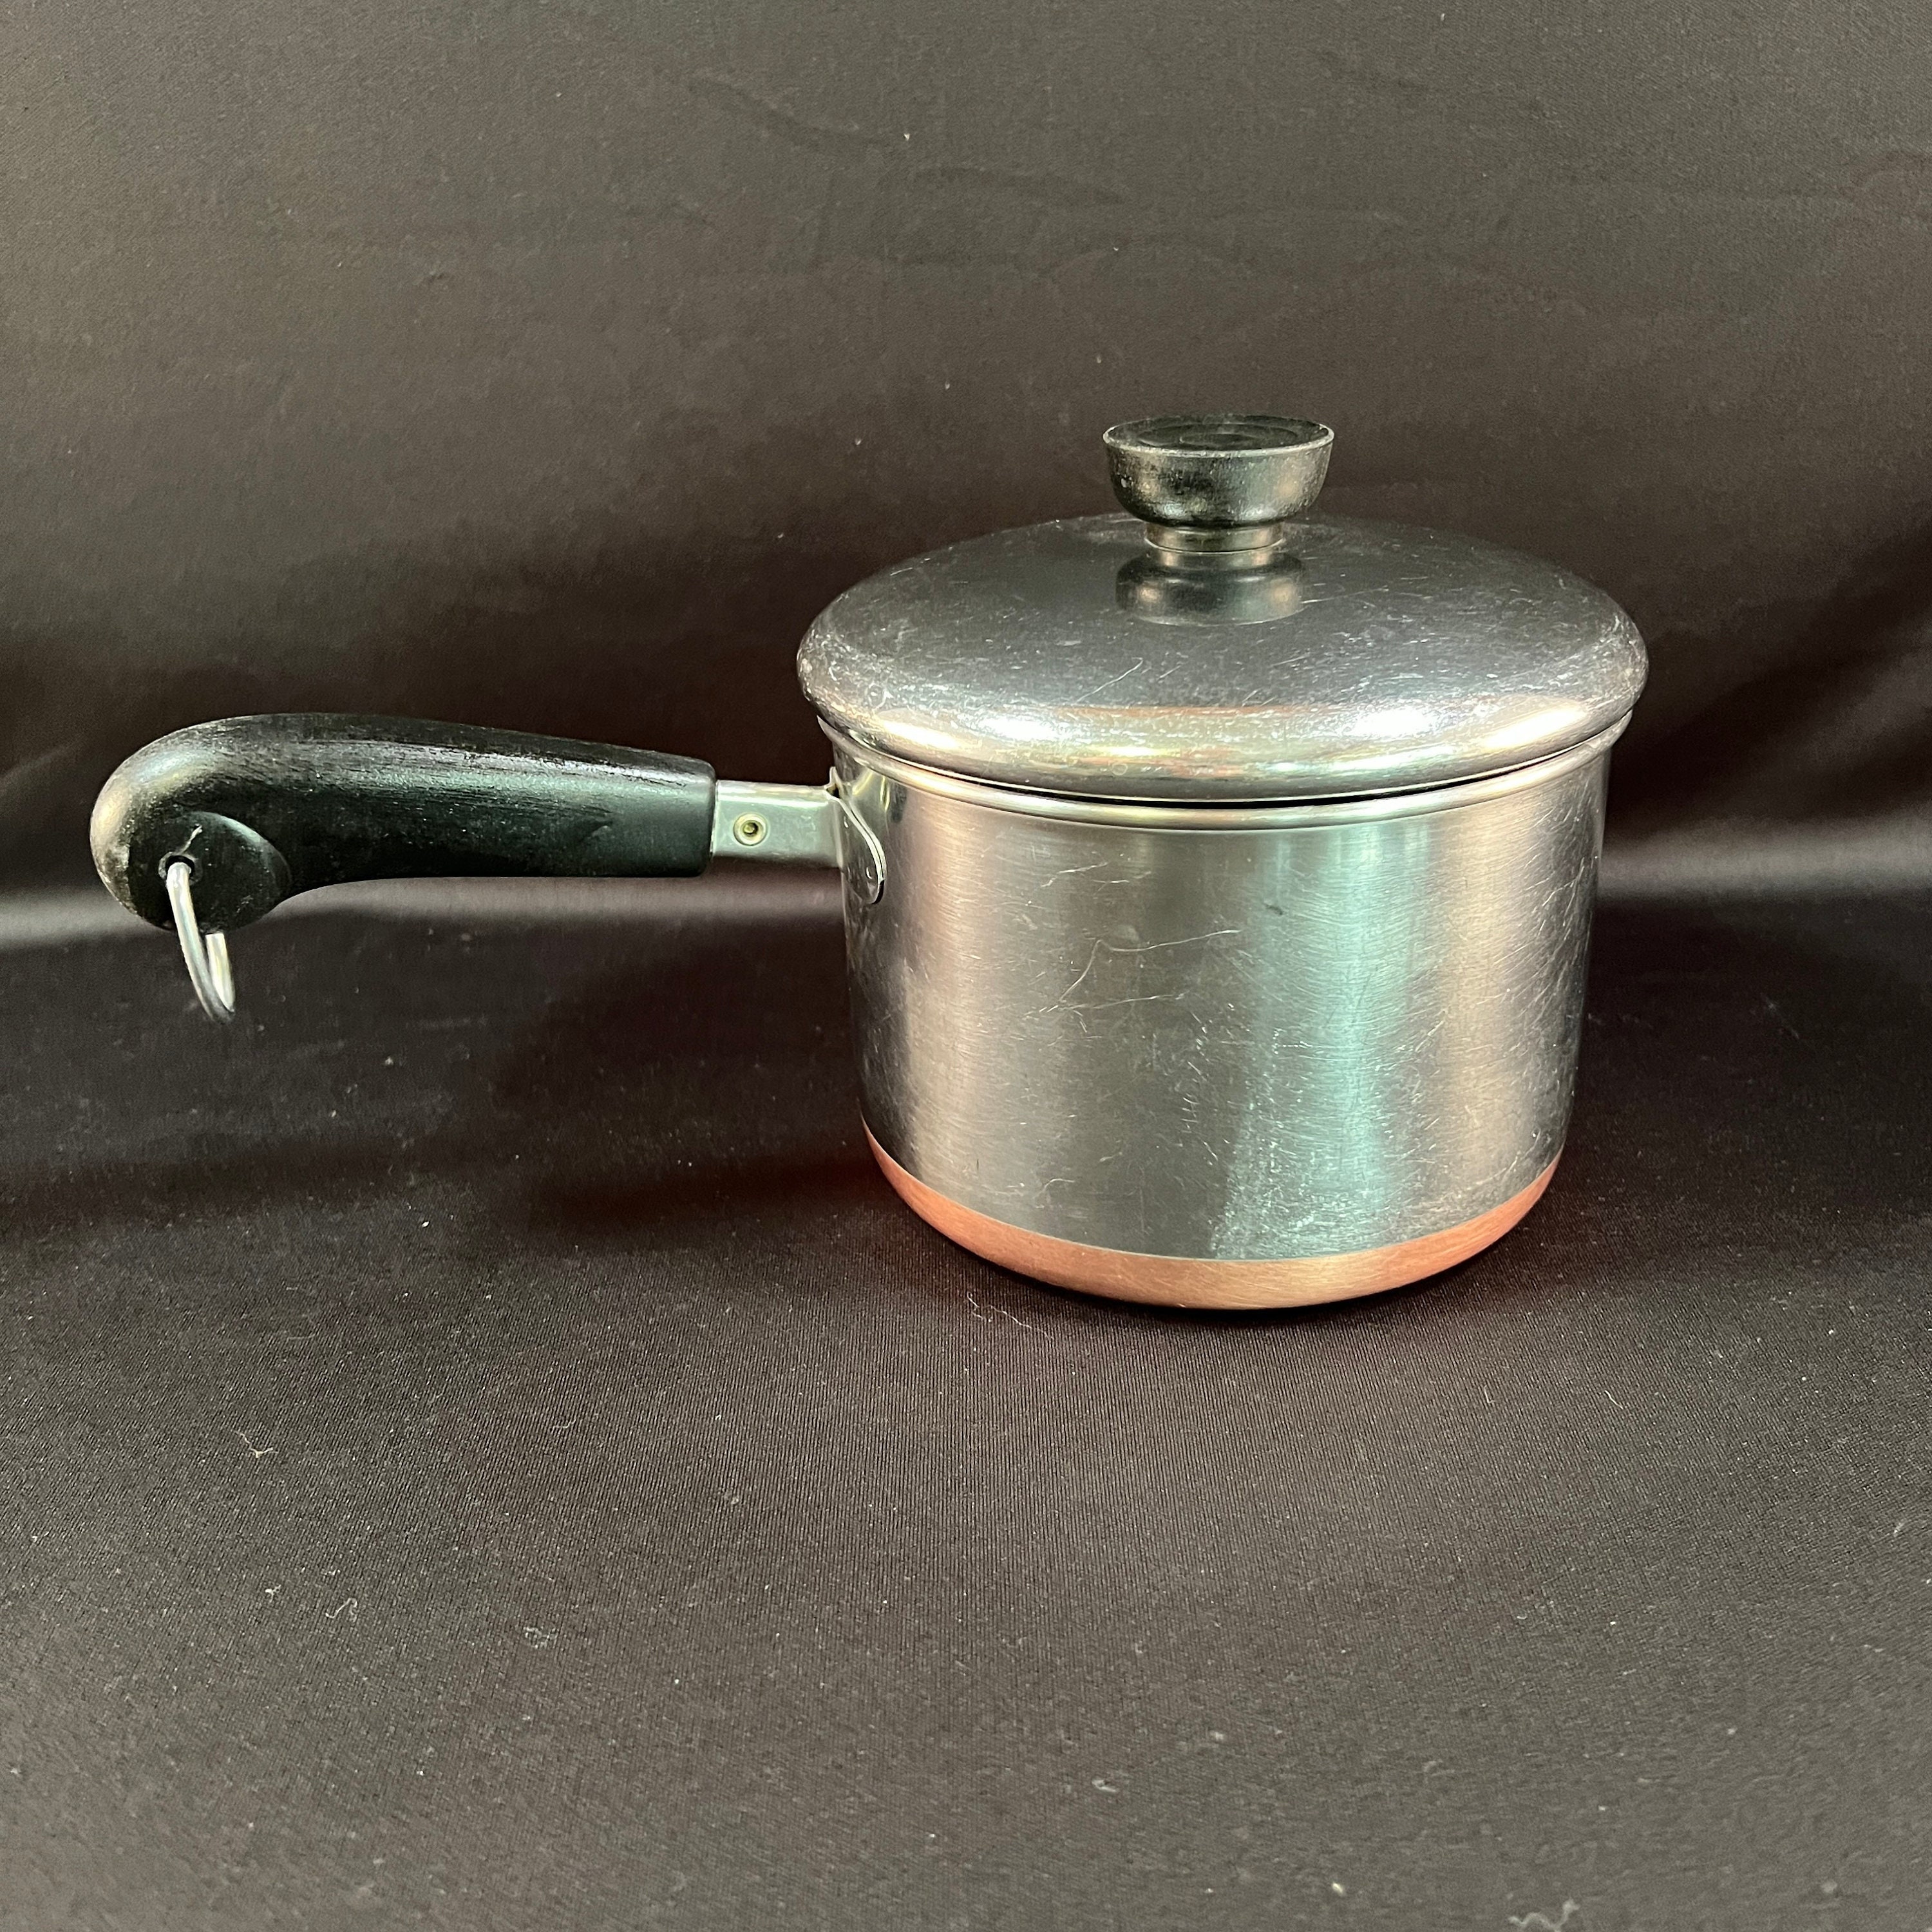 revere ware, Kitchen, Revere Ware Copper Core Bottom Vintage 5 Pc Set  Pots Pans Lids Usa